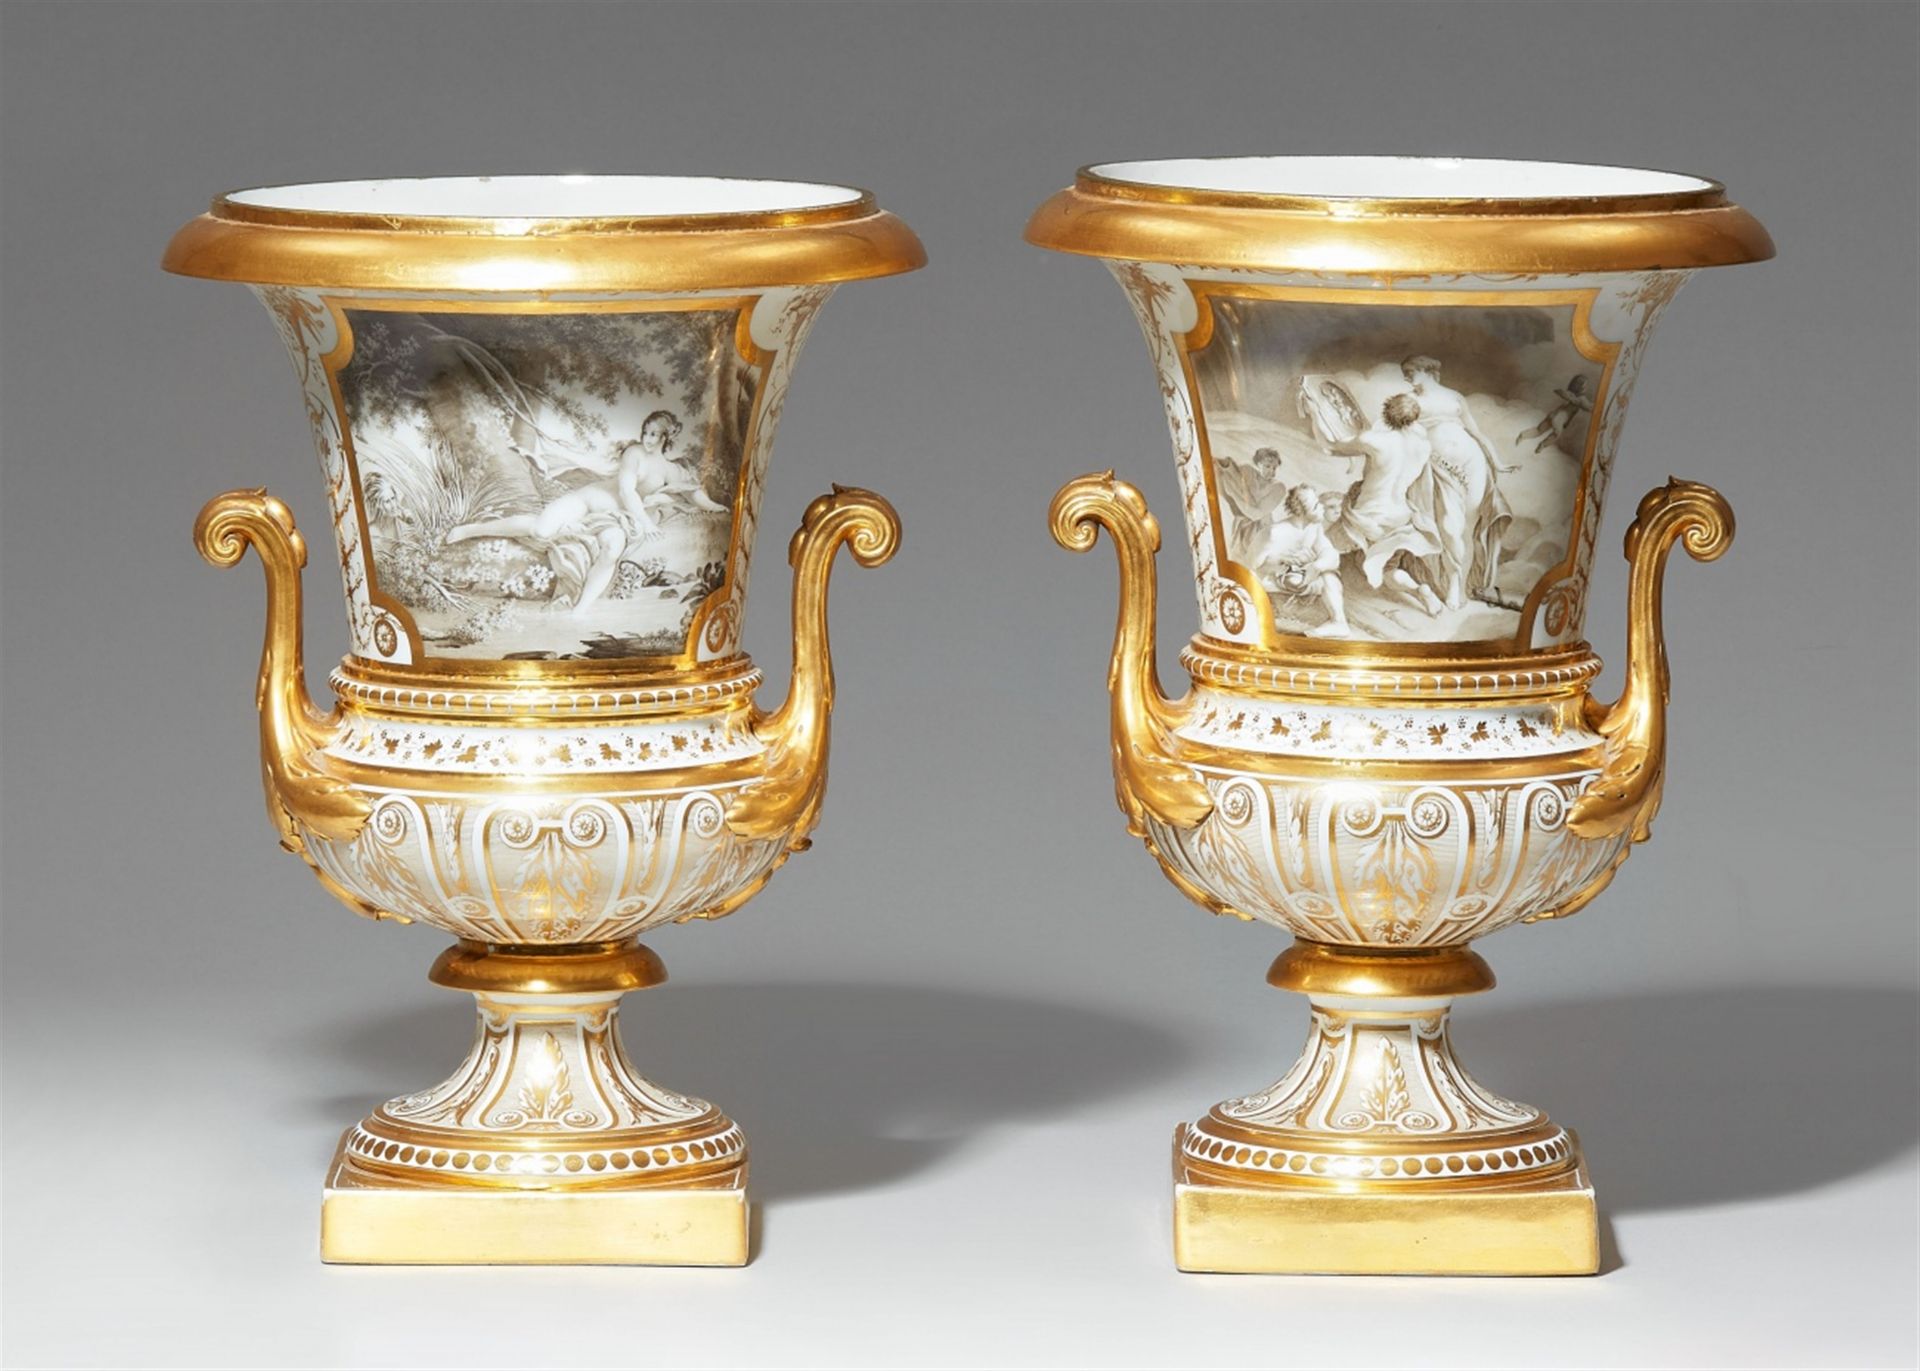 Paar Medici-Vasen mit Gemäldekopien en grisaille - Bild 2 aus 2